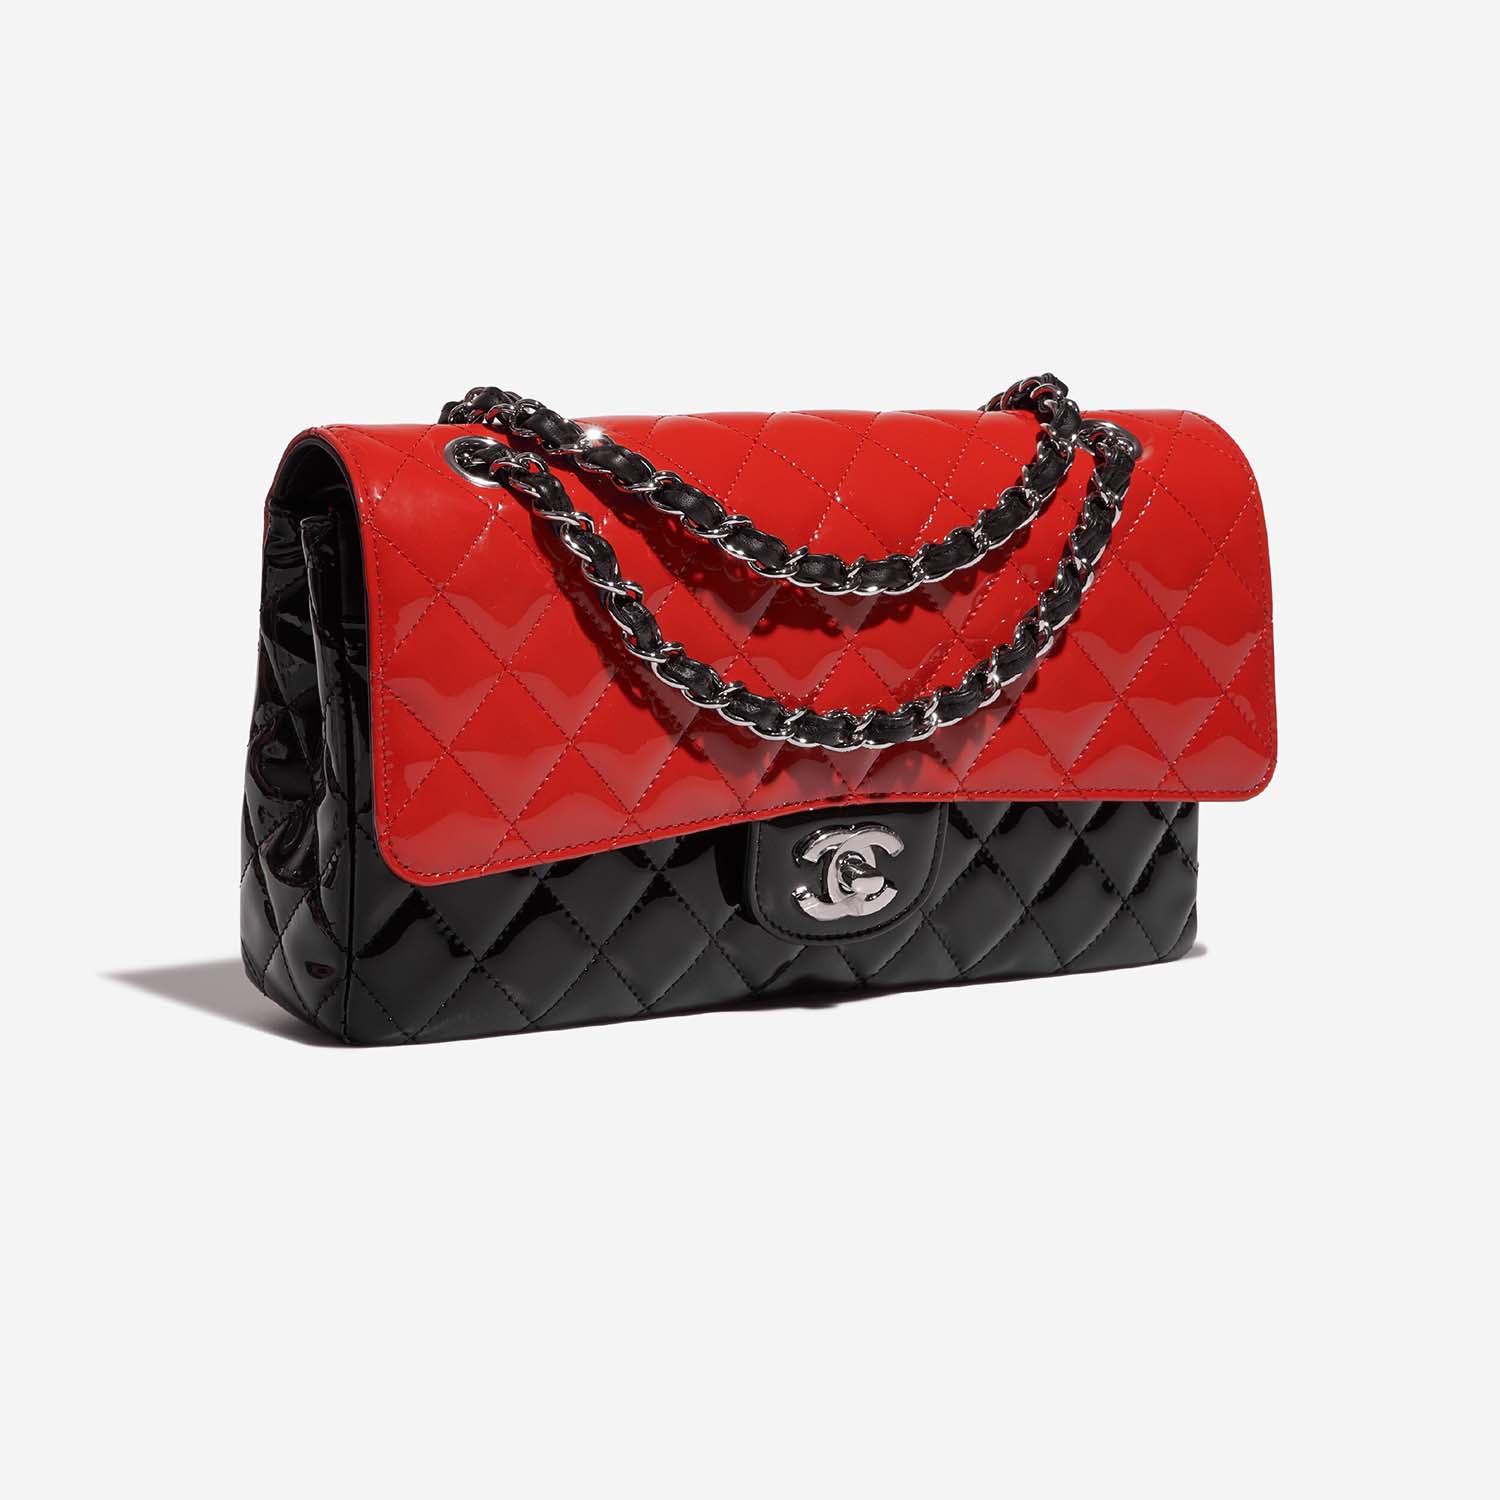 Chanel Timeless Medium Schwarz-Rot Side Front | Verkaufen Sie Ihre Designer-Tasche auf Saclab.com